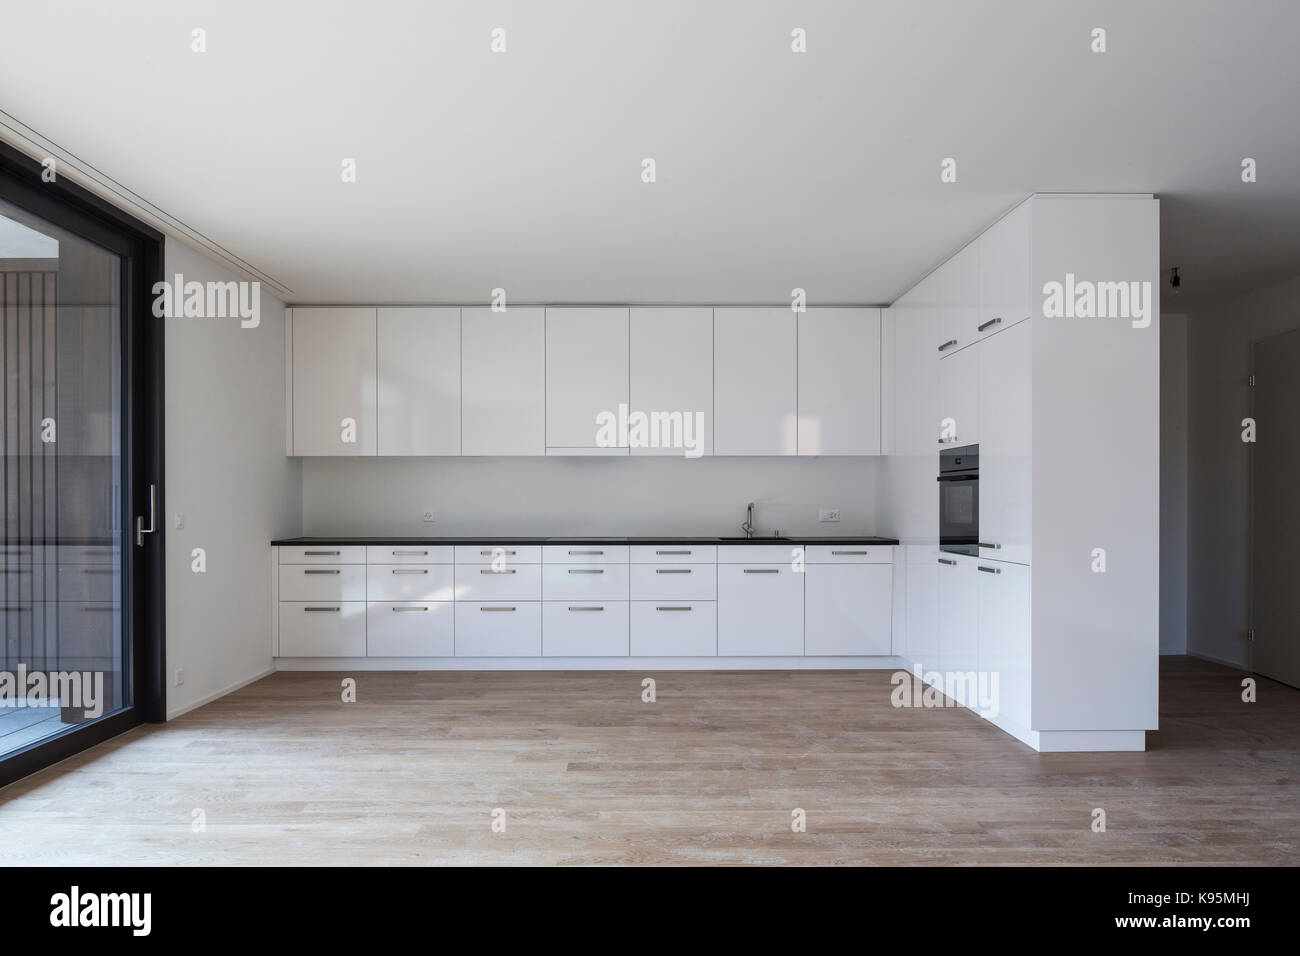 Unfurnished kitchen. Housing estate Malters, Malters, Switzerland. Architect: Diener & Diener, 2016. Stock Photo